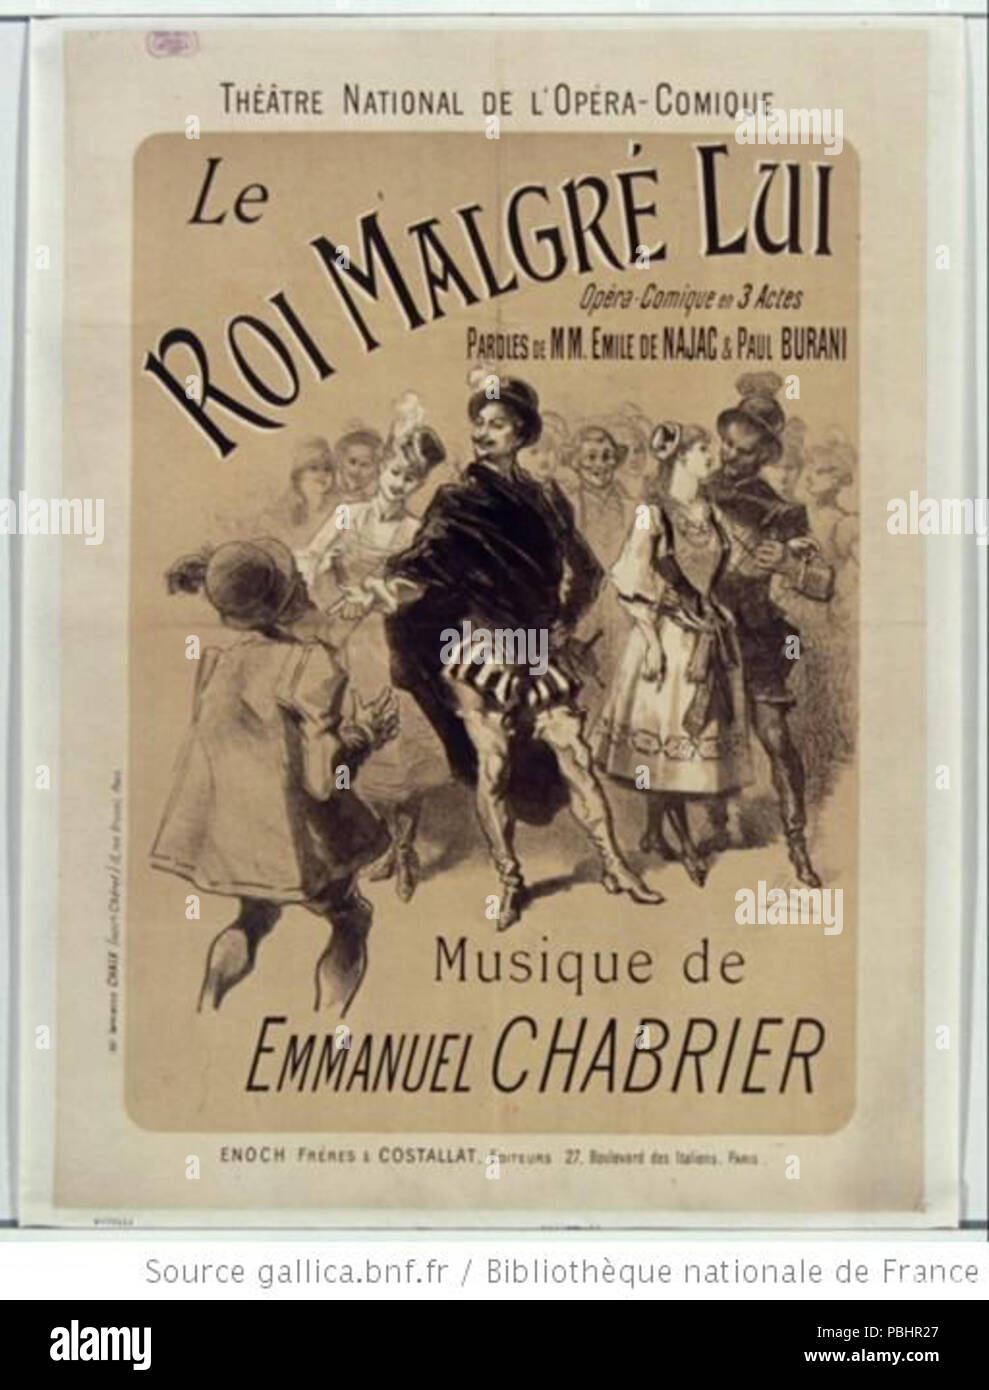 1745 Théâtre national de l'Opéra-Comique. Le Roi malgré lui. Musique de Emmanuel Chabrier. Affiche Jules Chéret Stock Photo